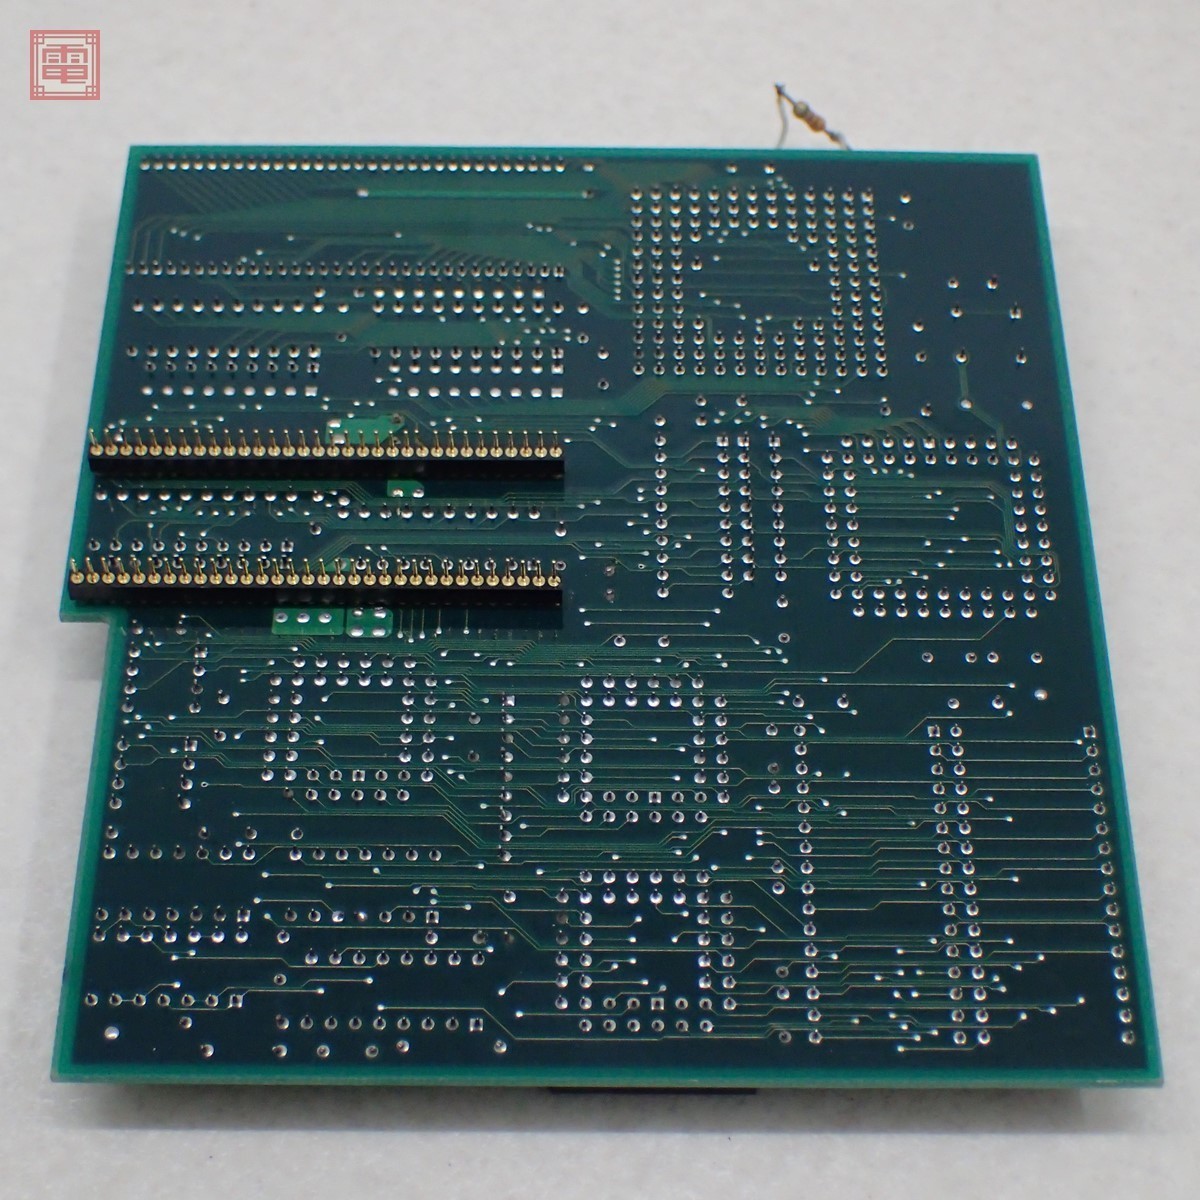 X68000XVI MPUアクセラレーターボード Xell... - ヤフオク!